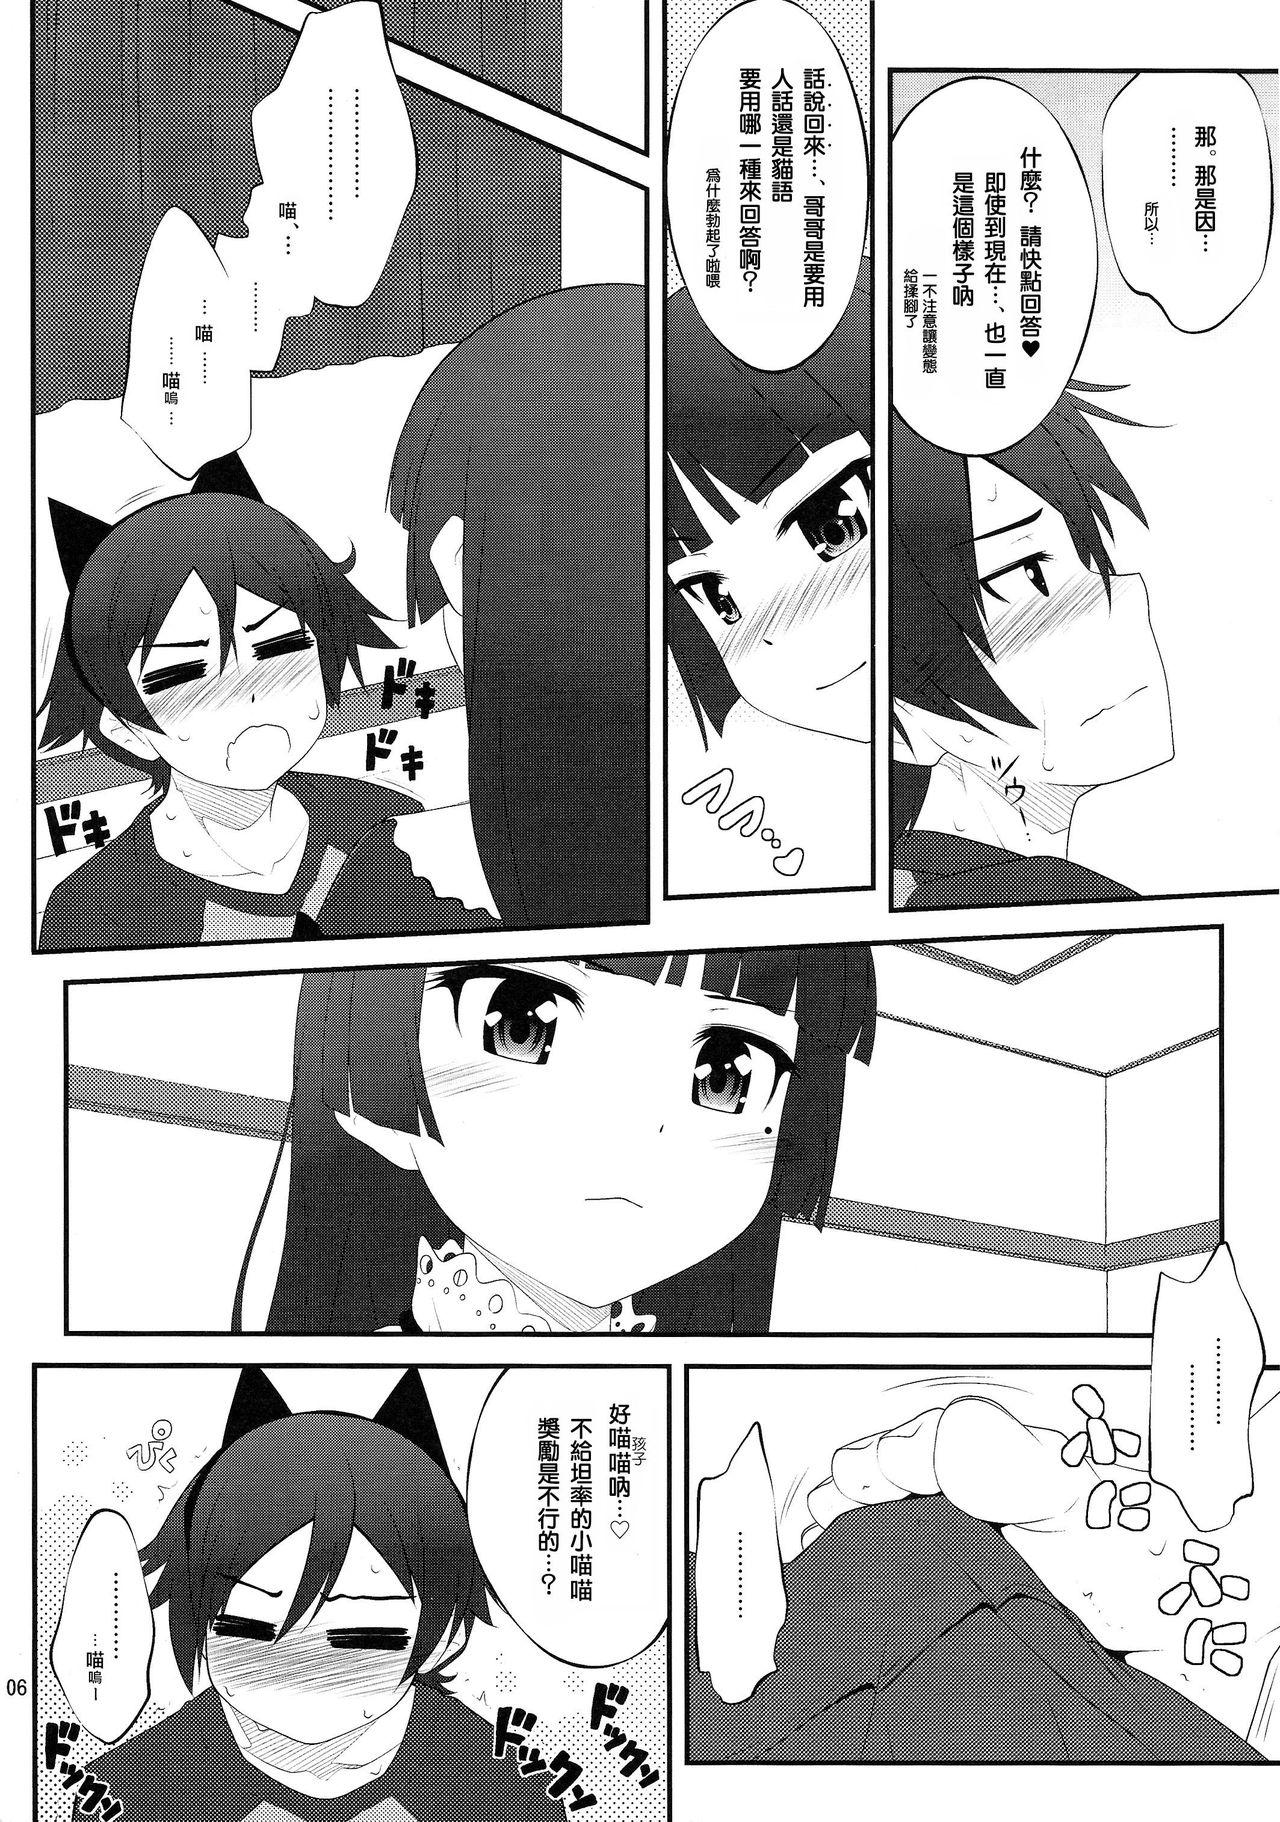 Pussy Sex Nii-san, Ashi Monde Choudai After - Ore no imouto ga konna ni kawaii wake ga nai Sucks - Page 6